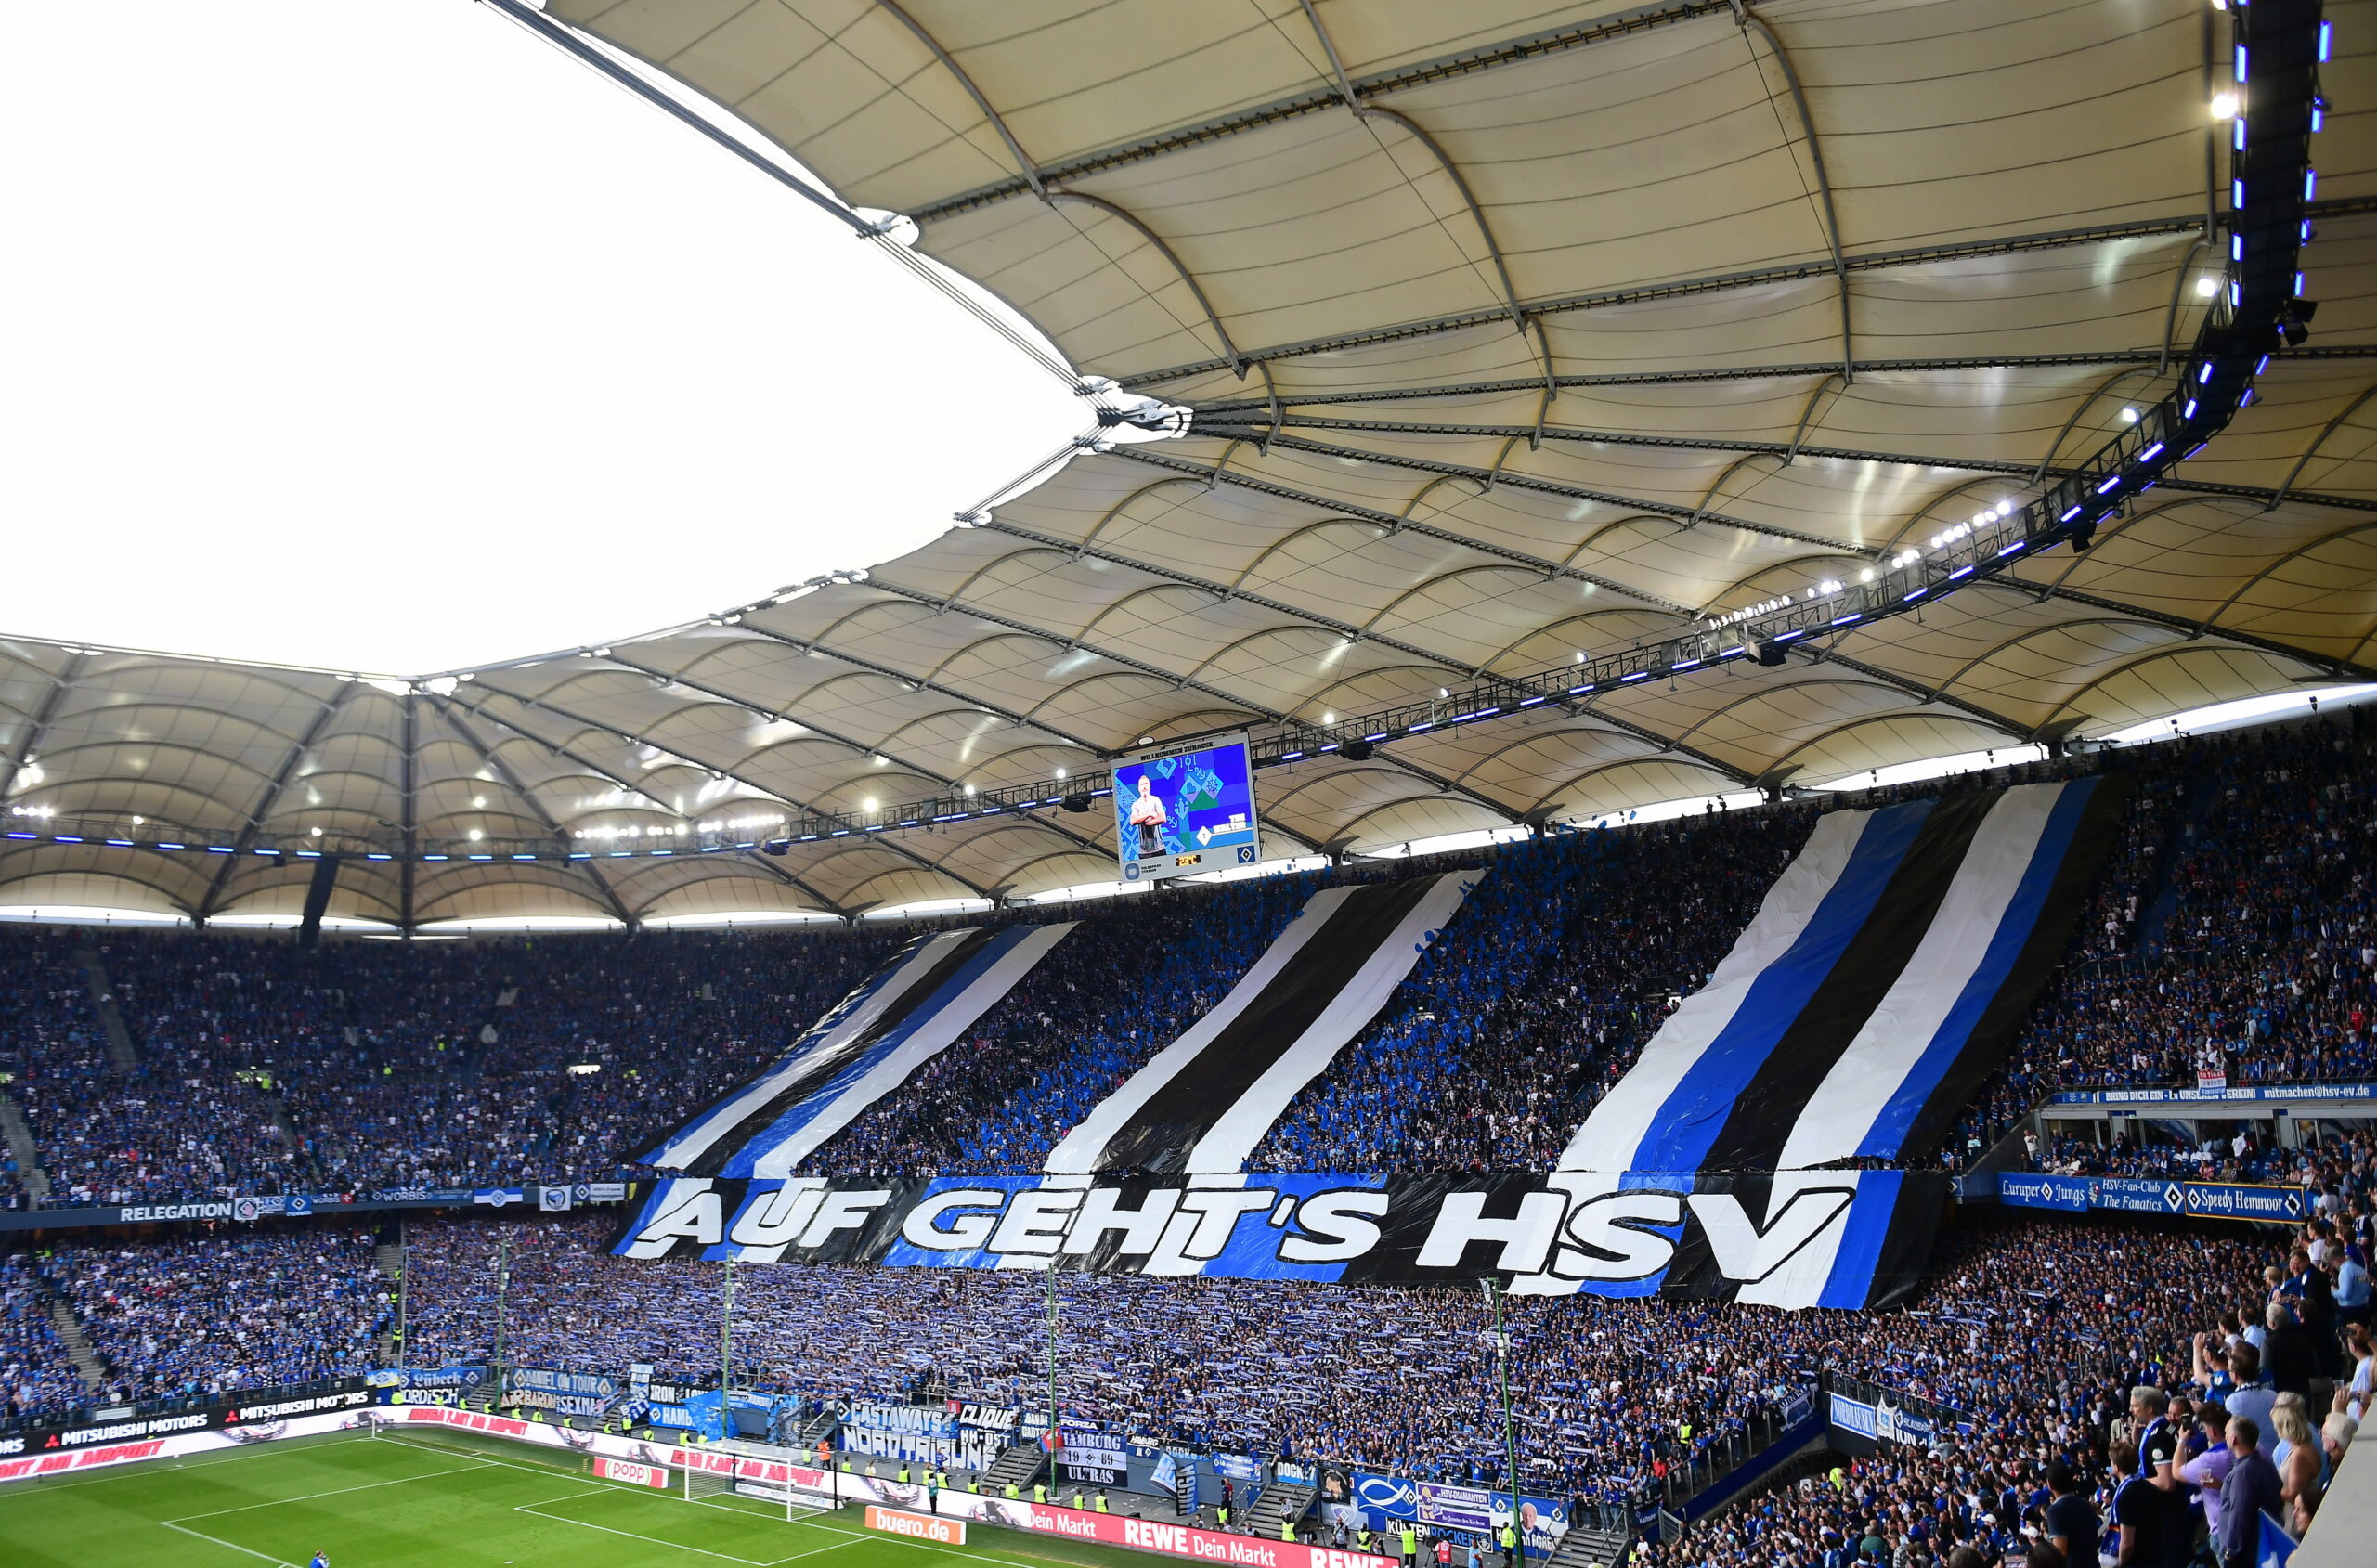 Das Volksparkstadion, die Heimat des HSV.